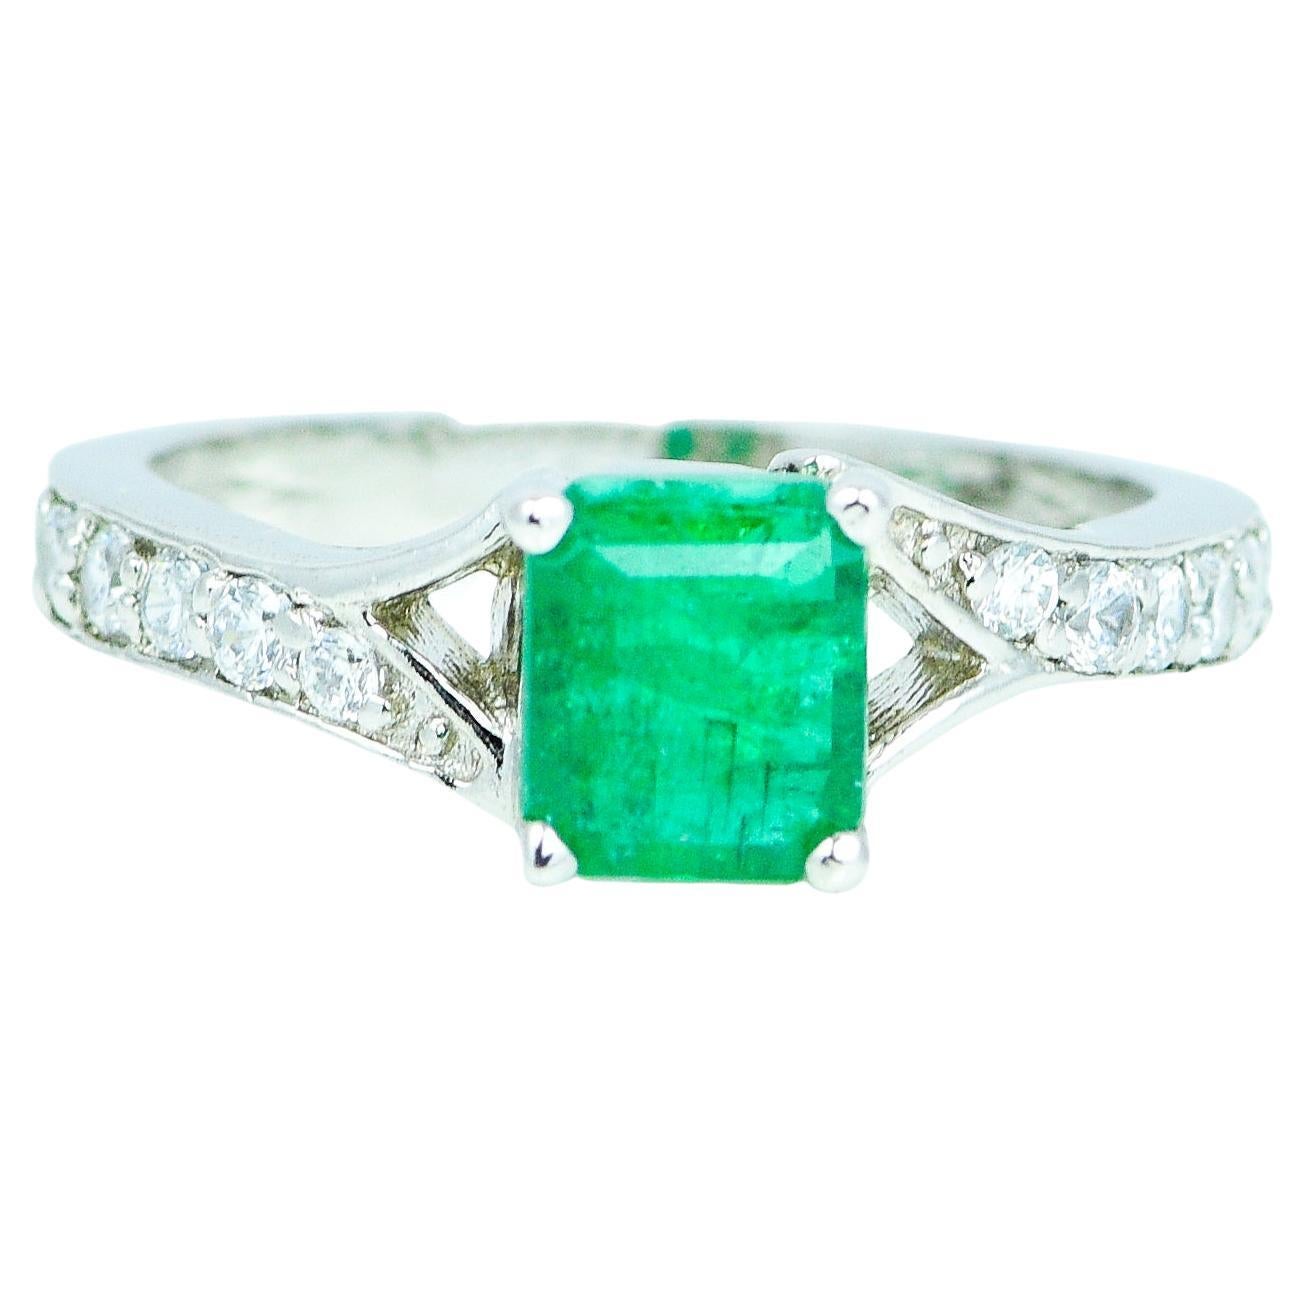 1.11 Carat Natural Emerald Ring